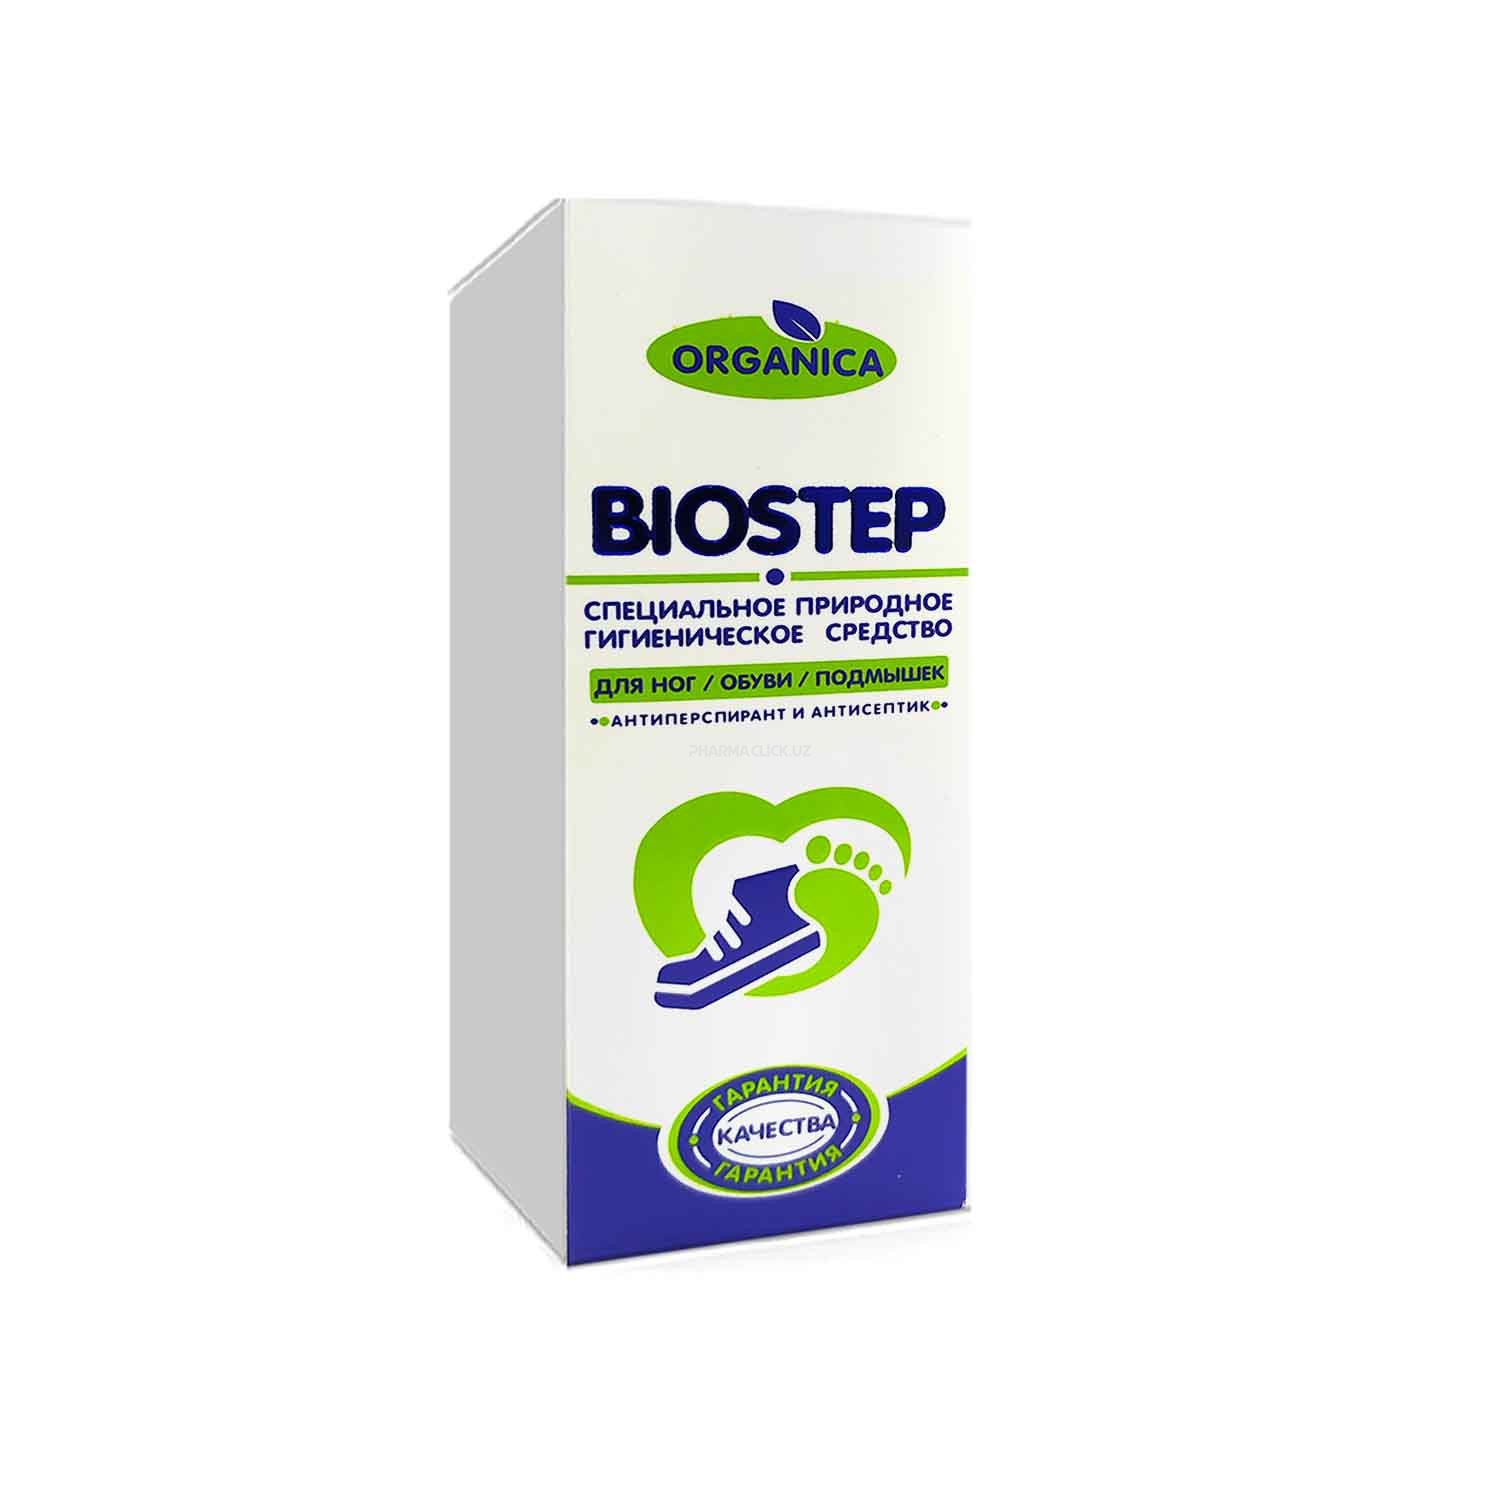 Гигиеническое средство для удаления запаха "BIOSTEP"